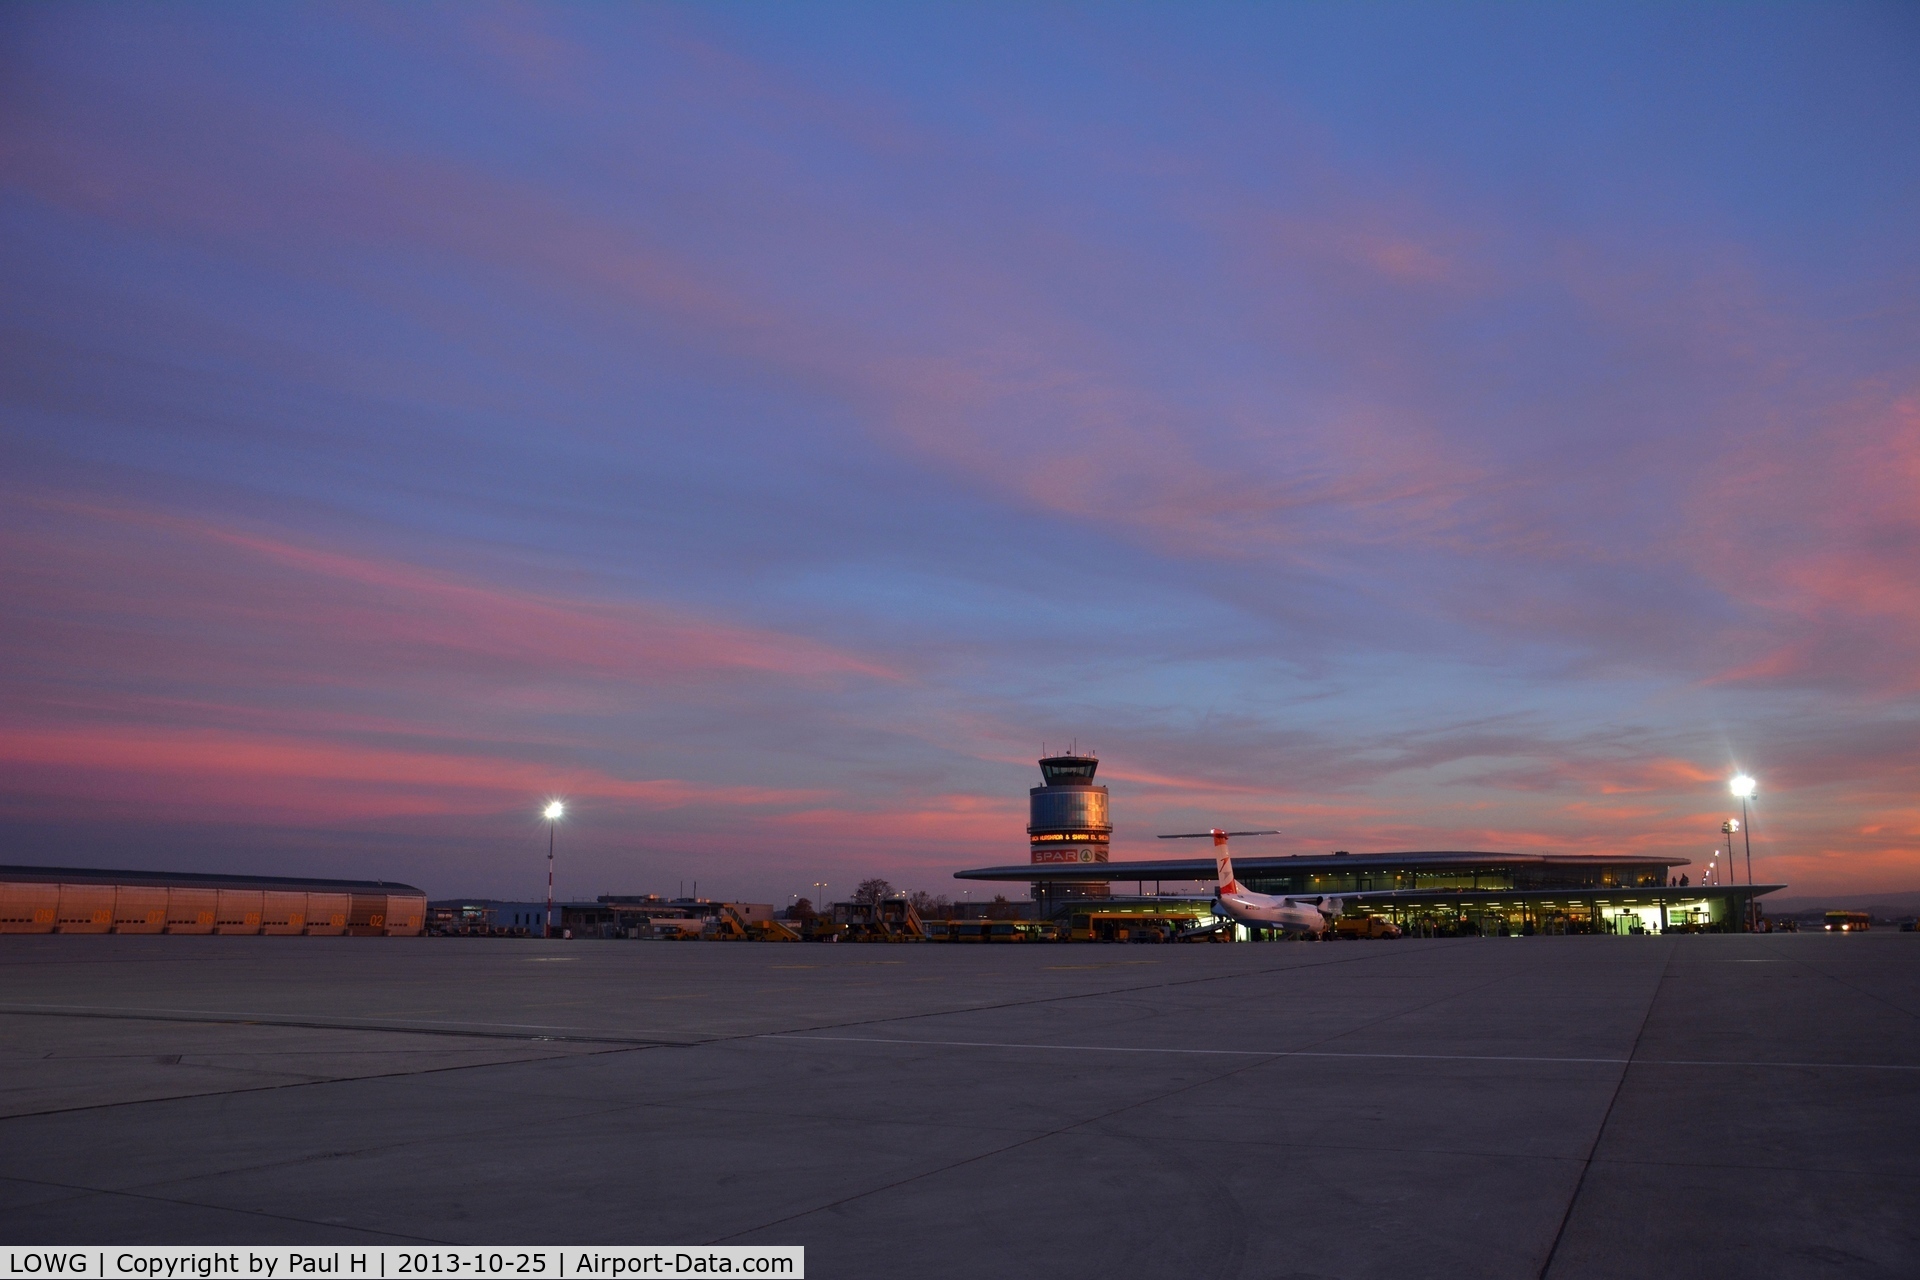 Graz Airport, Graz Austria (LOWG) - Sunset at Lowg